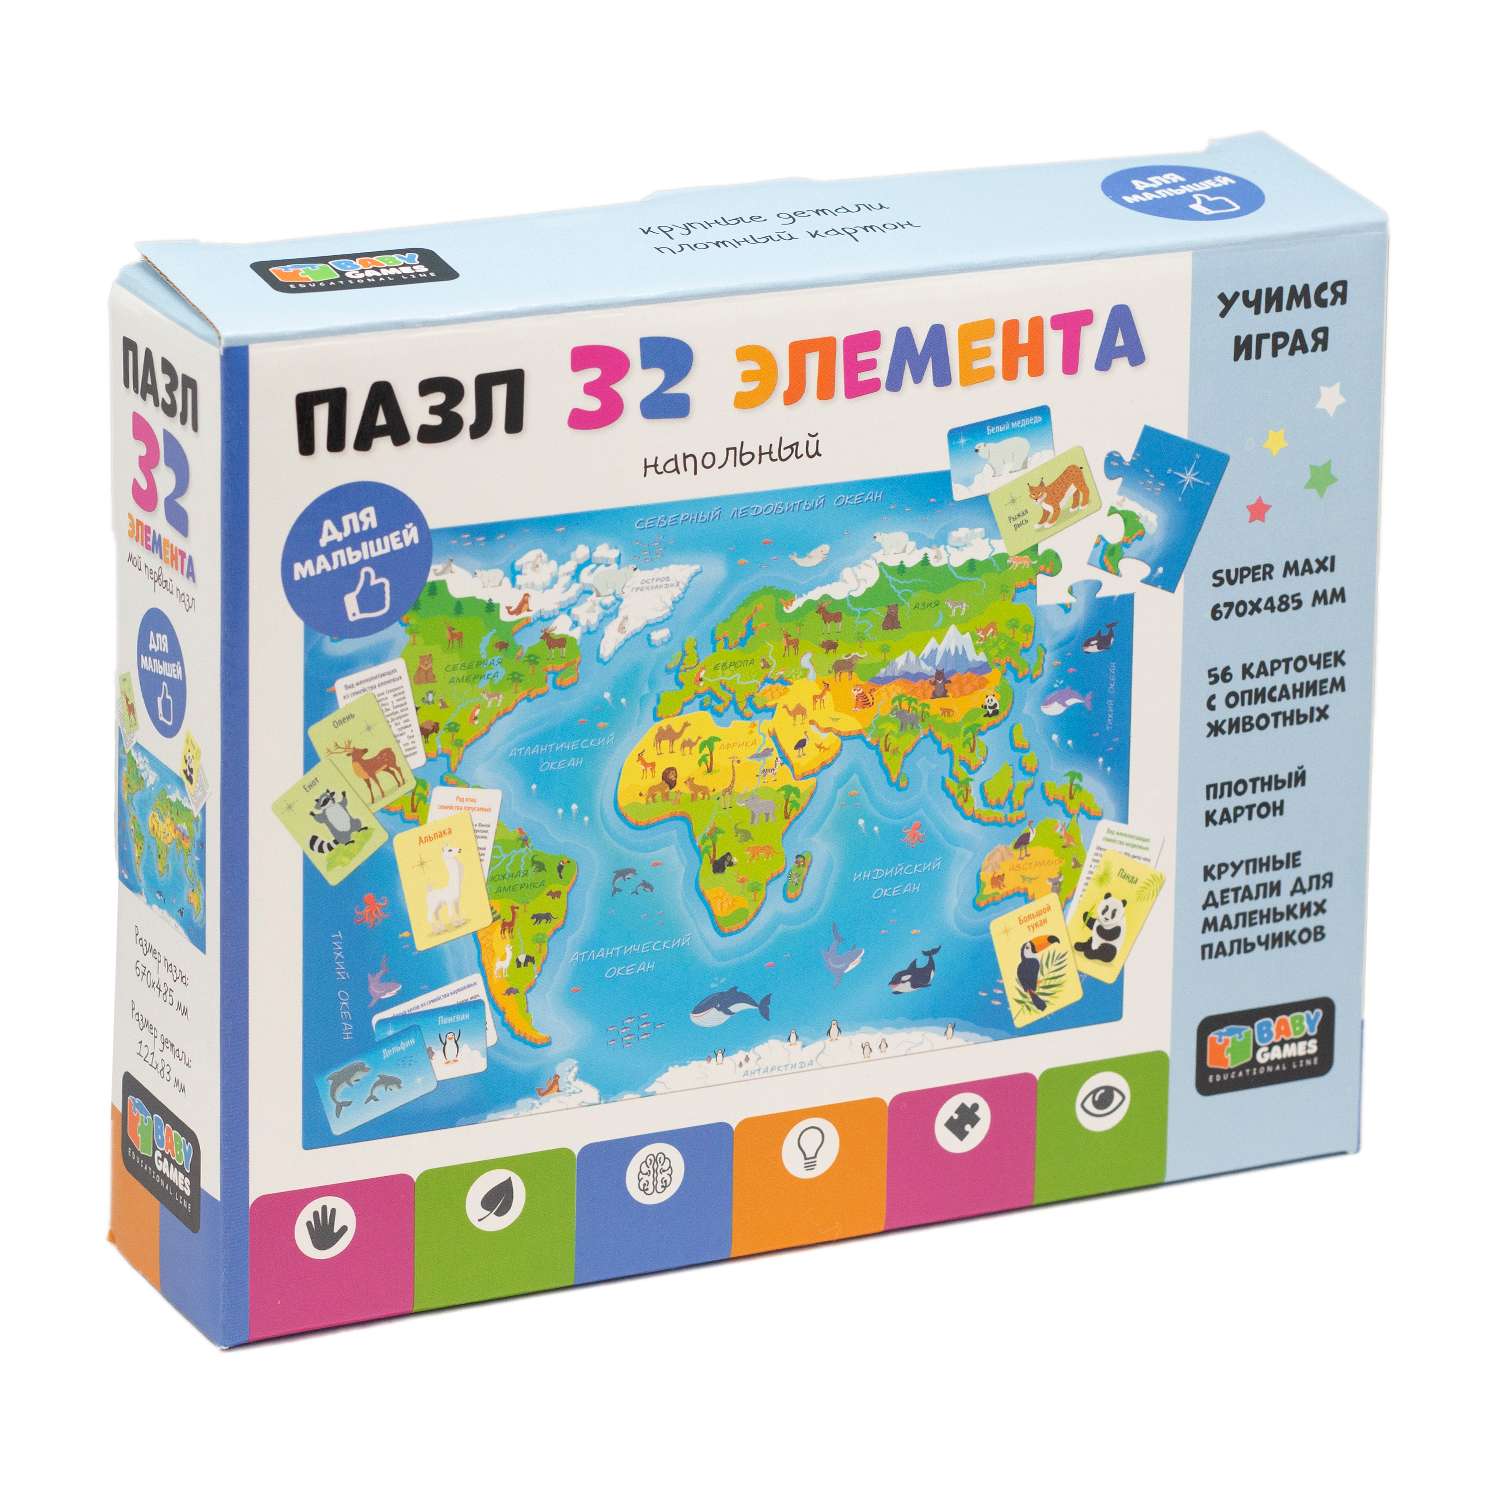 Пазл Origami BabyGames Карта мира обучающие карточки напольный 32элемента 06748 - фото 1